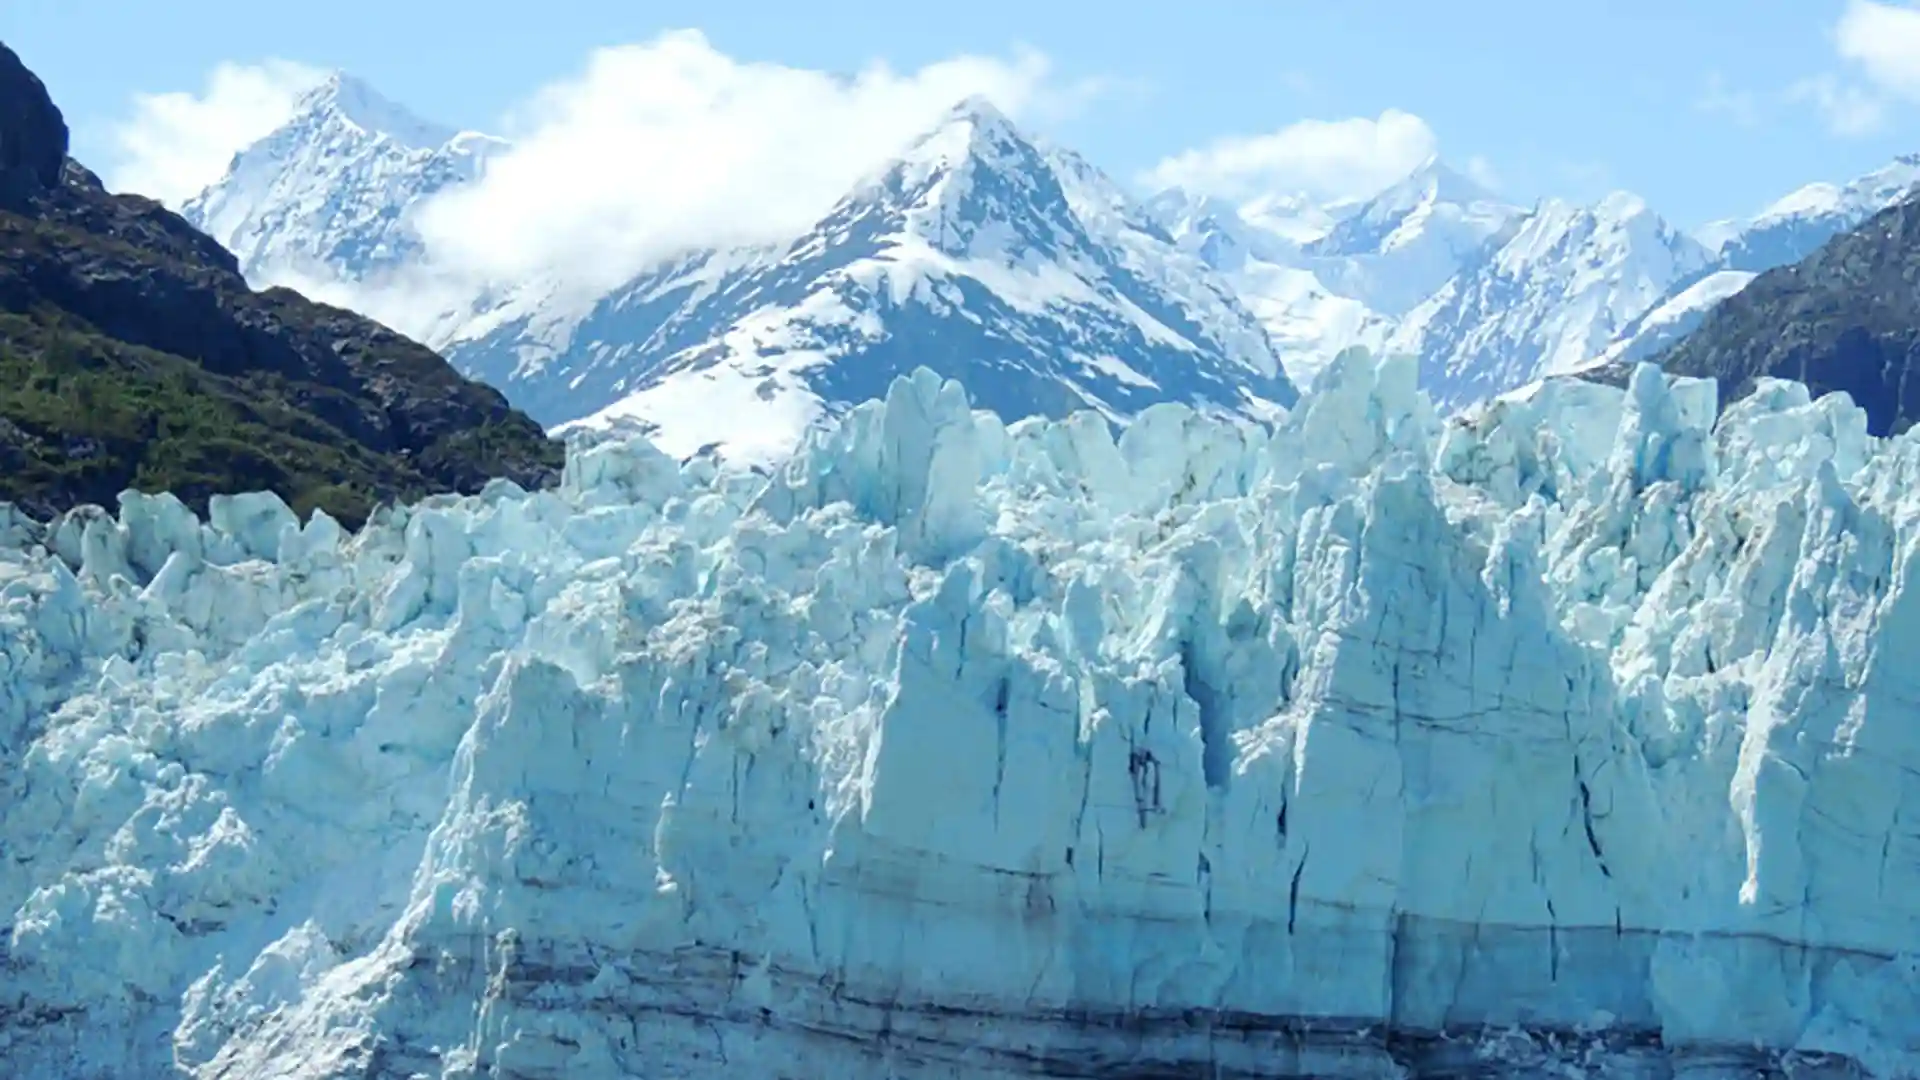 View of glacier in Alaska.